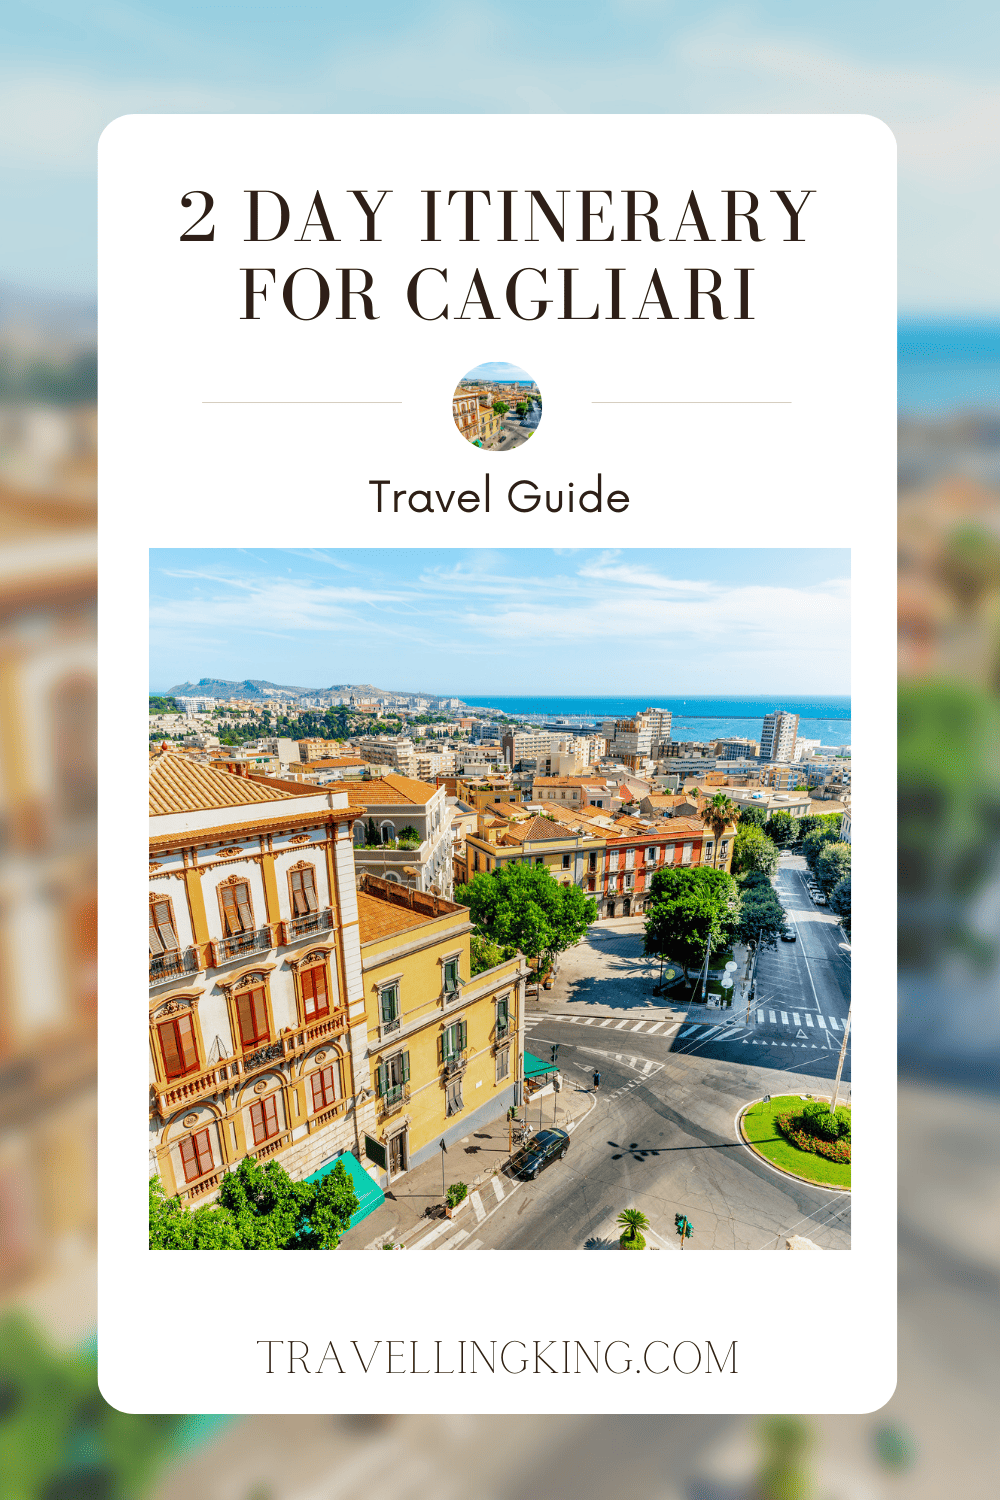 2 Day Itinerary for Cagliari